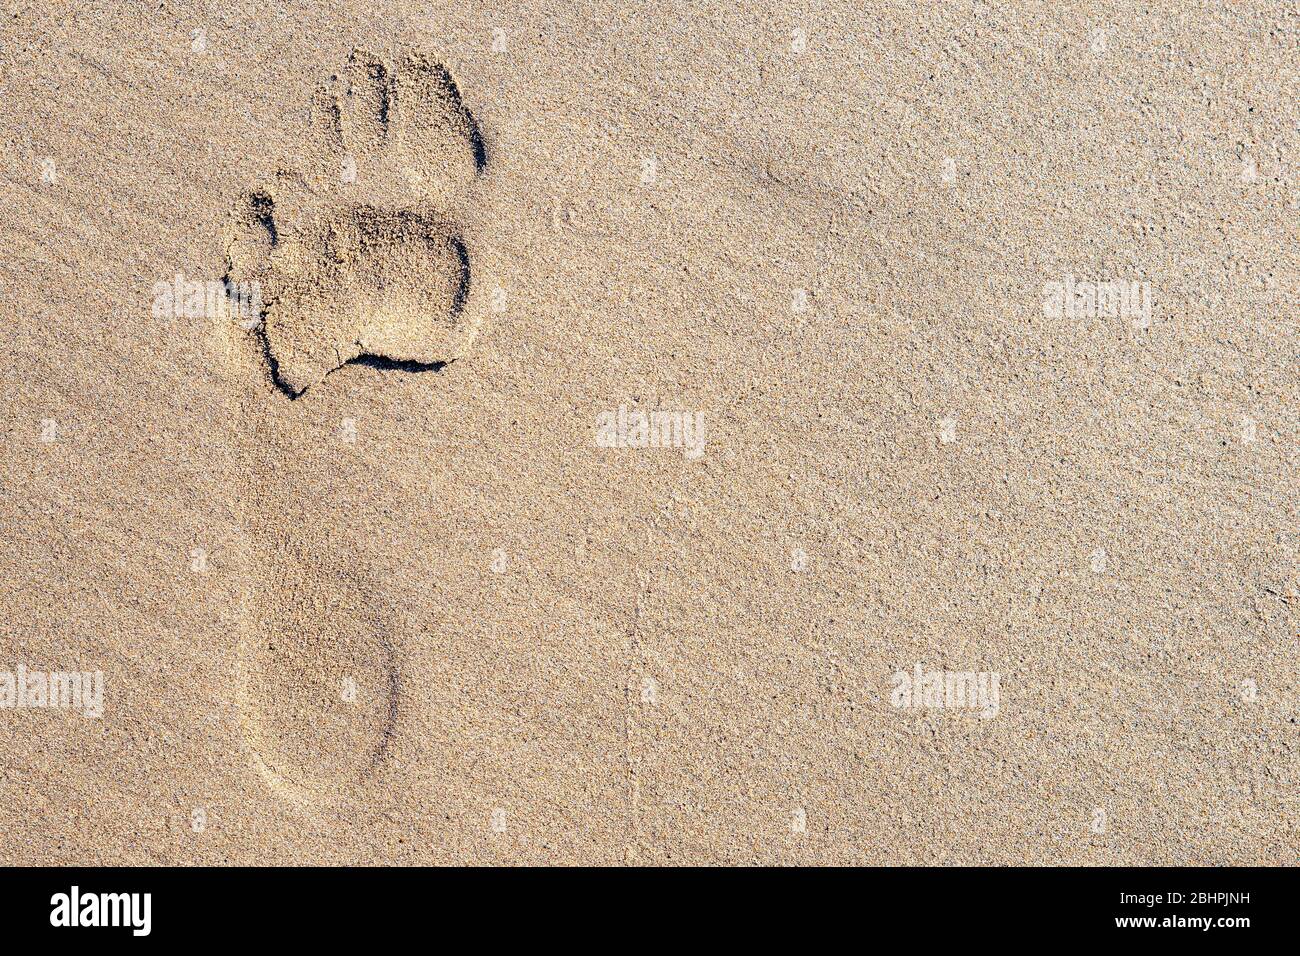 Une empreinte unique dans le sable sur une plage. Le pied était nu et le pied gauche. Beaucoup de place pour le texte. Banque D'Images